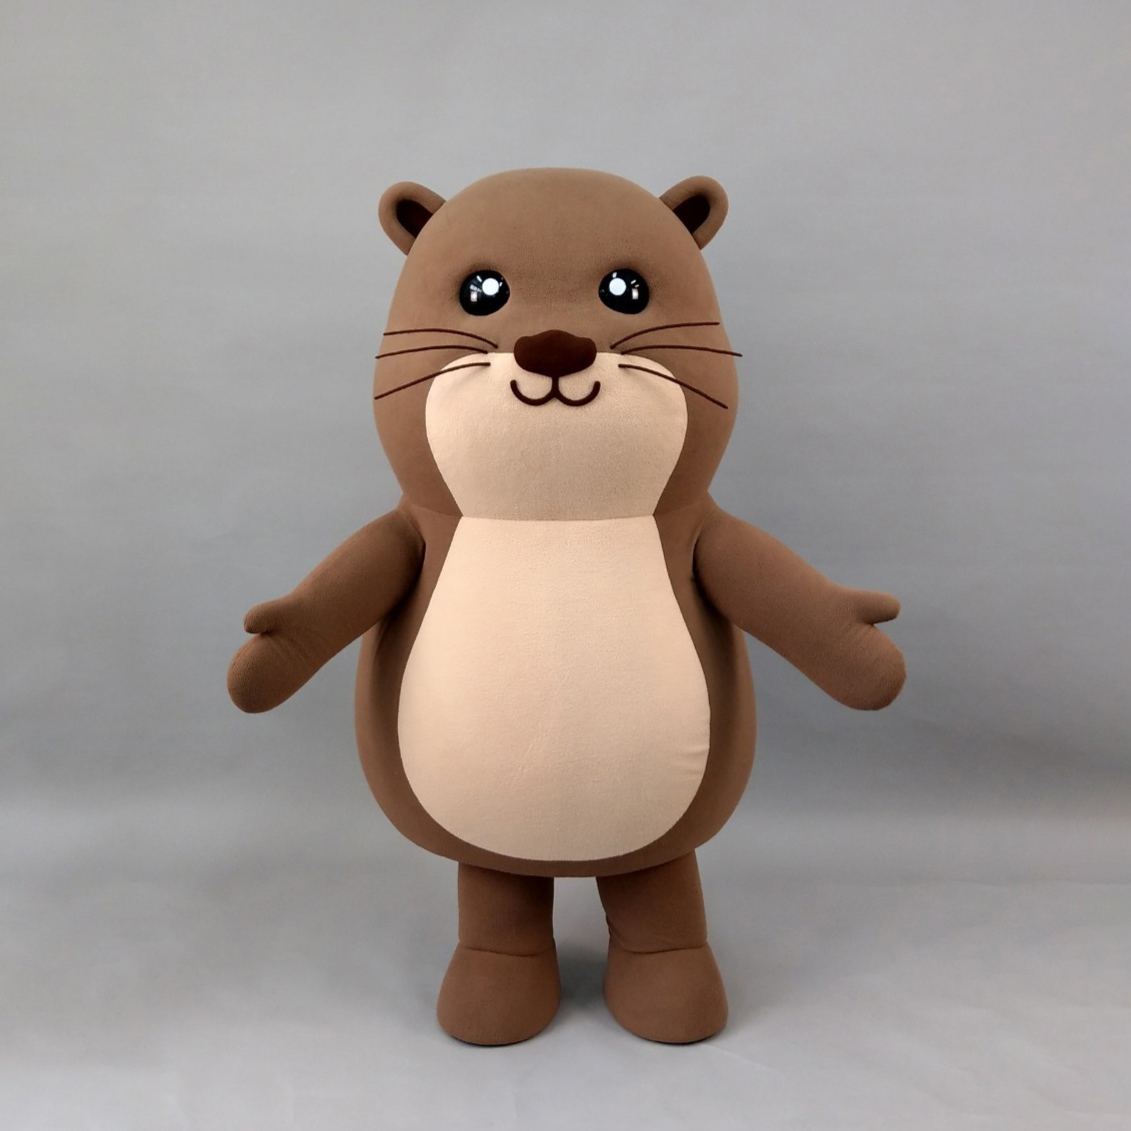 魔人社2021金門縣吉祥物水獺“阿特”人偶裝製作 Otter mascot costume